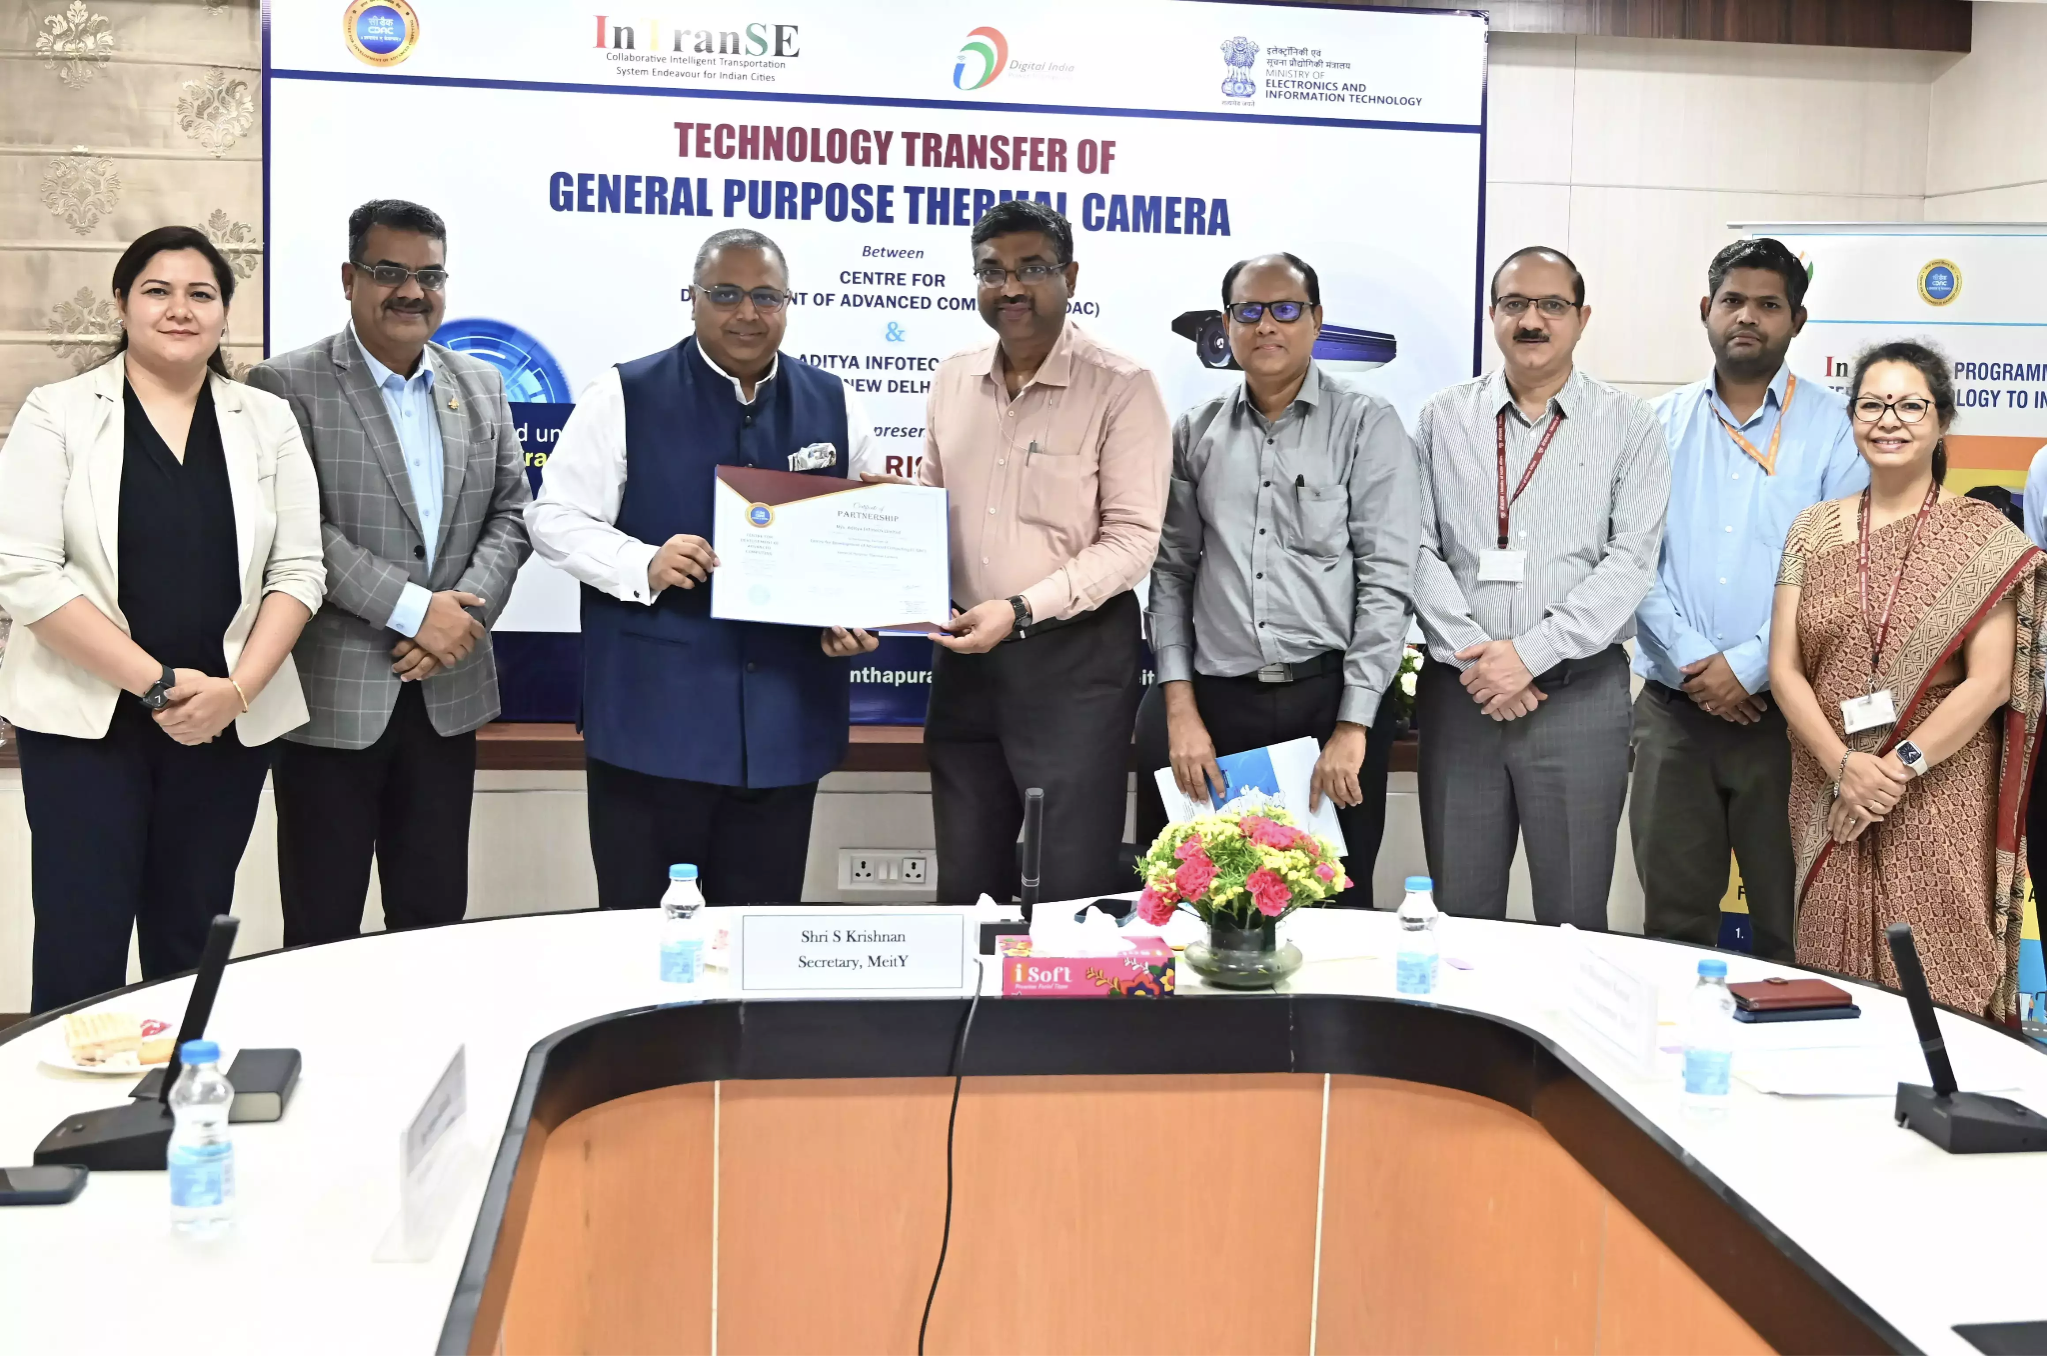 CP PLUS se asocia con C-DAC (MeitY) y el gobierno de la India para desarrollar tecnología de cámara térmica inteligente